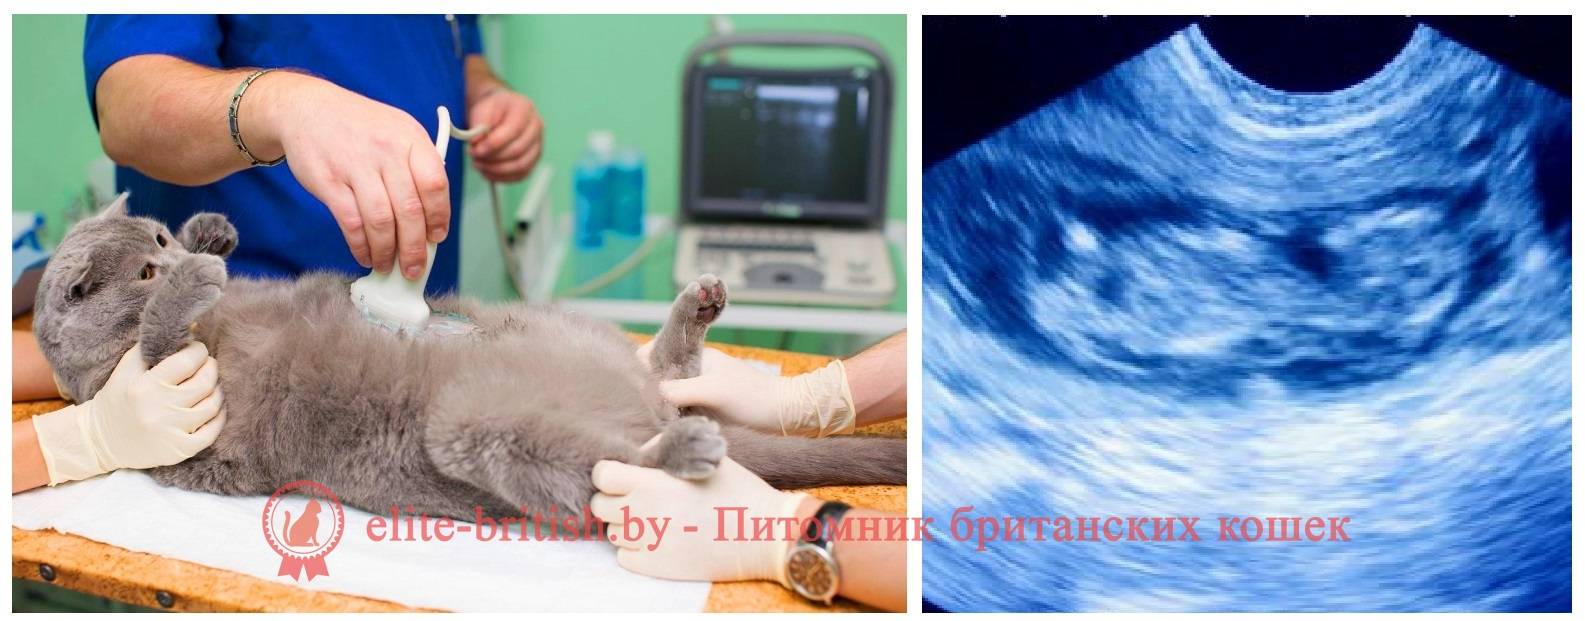 Признаки беременности кошки: как понять, что питомица ждет потомство